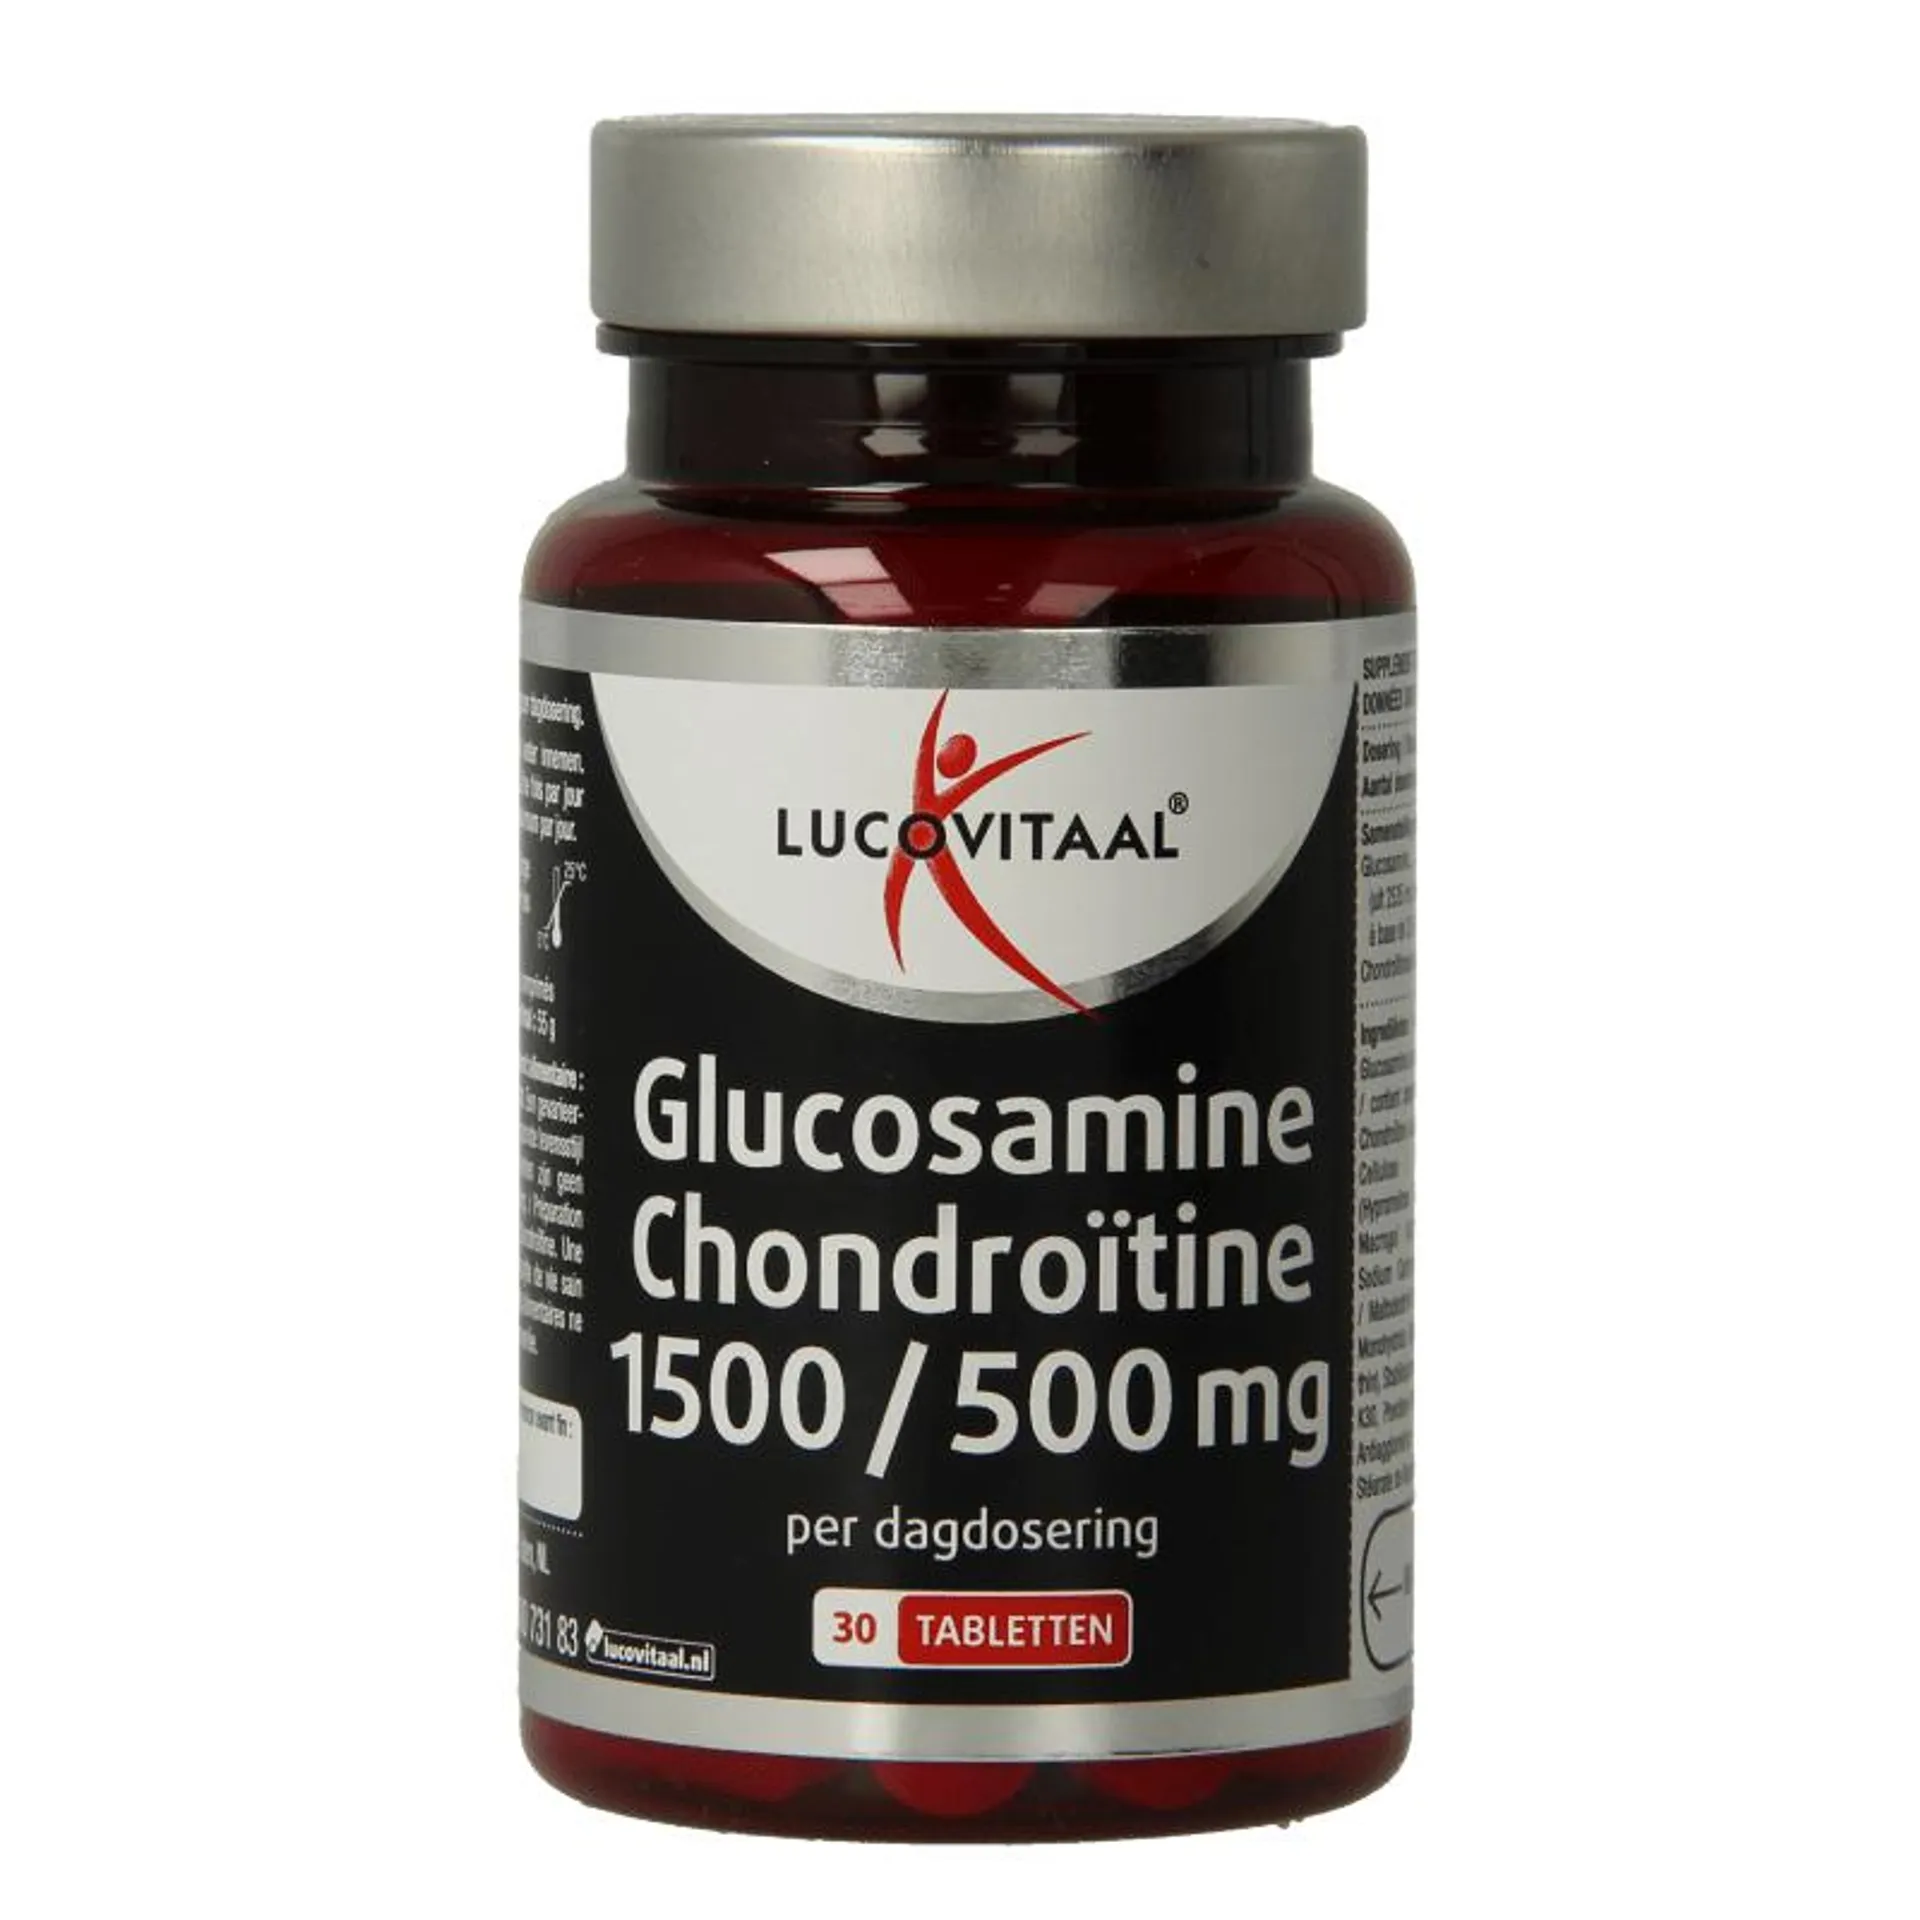 Lucovitaal Glucosamine/chondroitine 30 tabletten